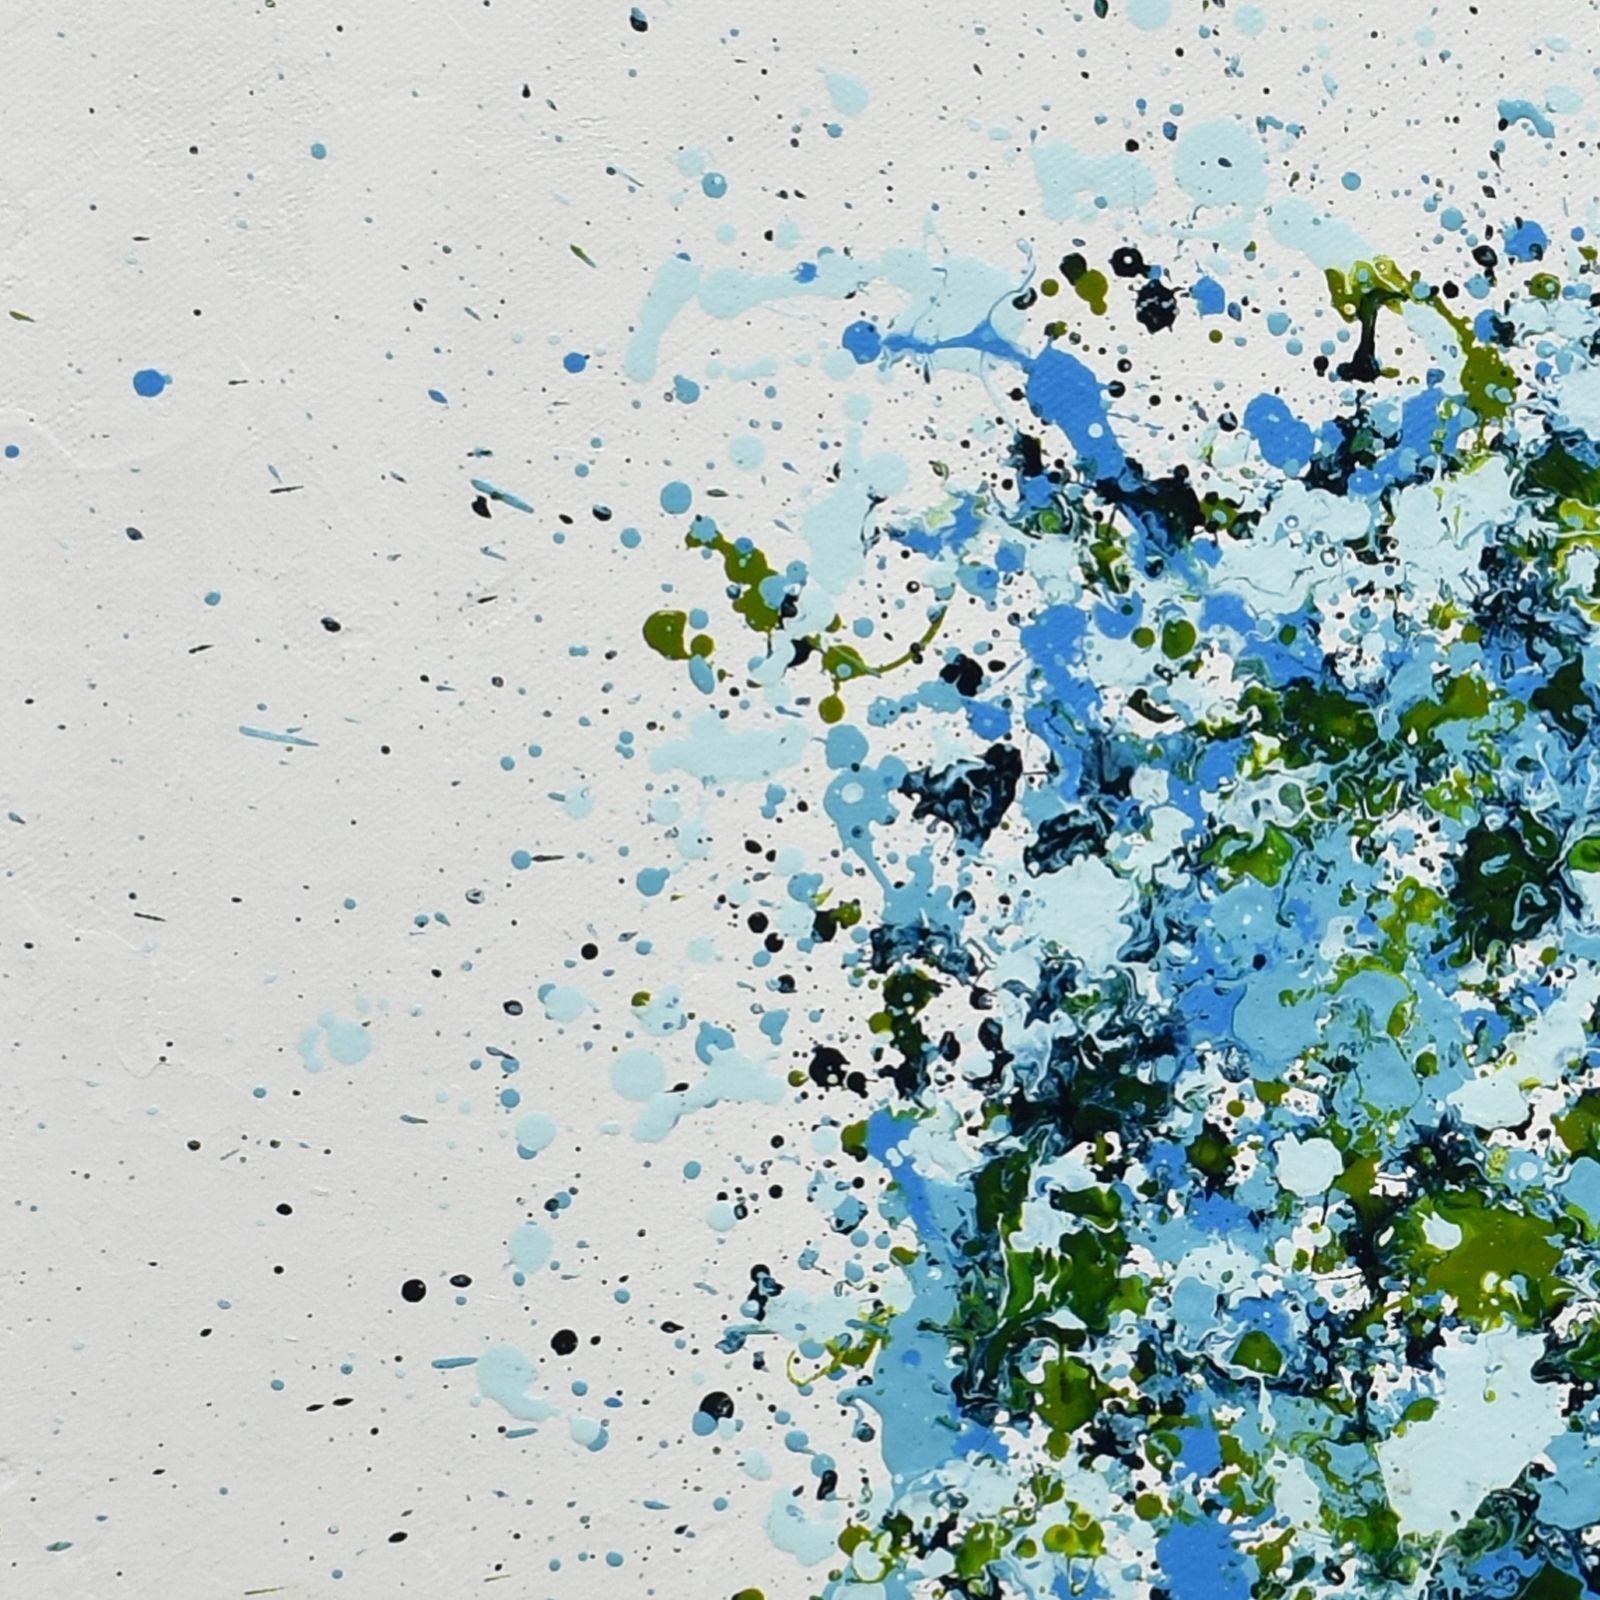 ΓÇ£Petal Burst 23ΓÇ¥ is a mid-size abstract painting in acrylic on canvas. Various shades of blue and green were carefully dripped on a textured white background. It is part of the 